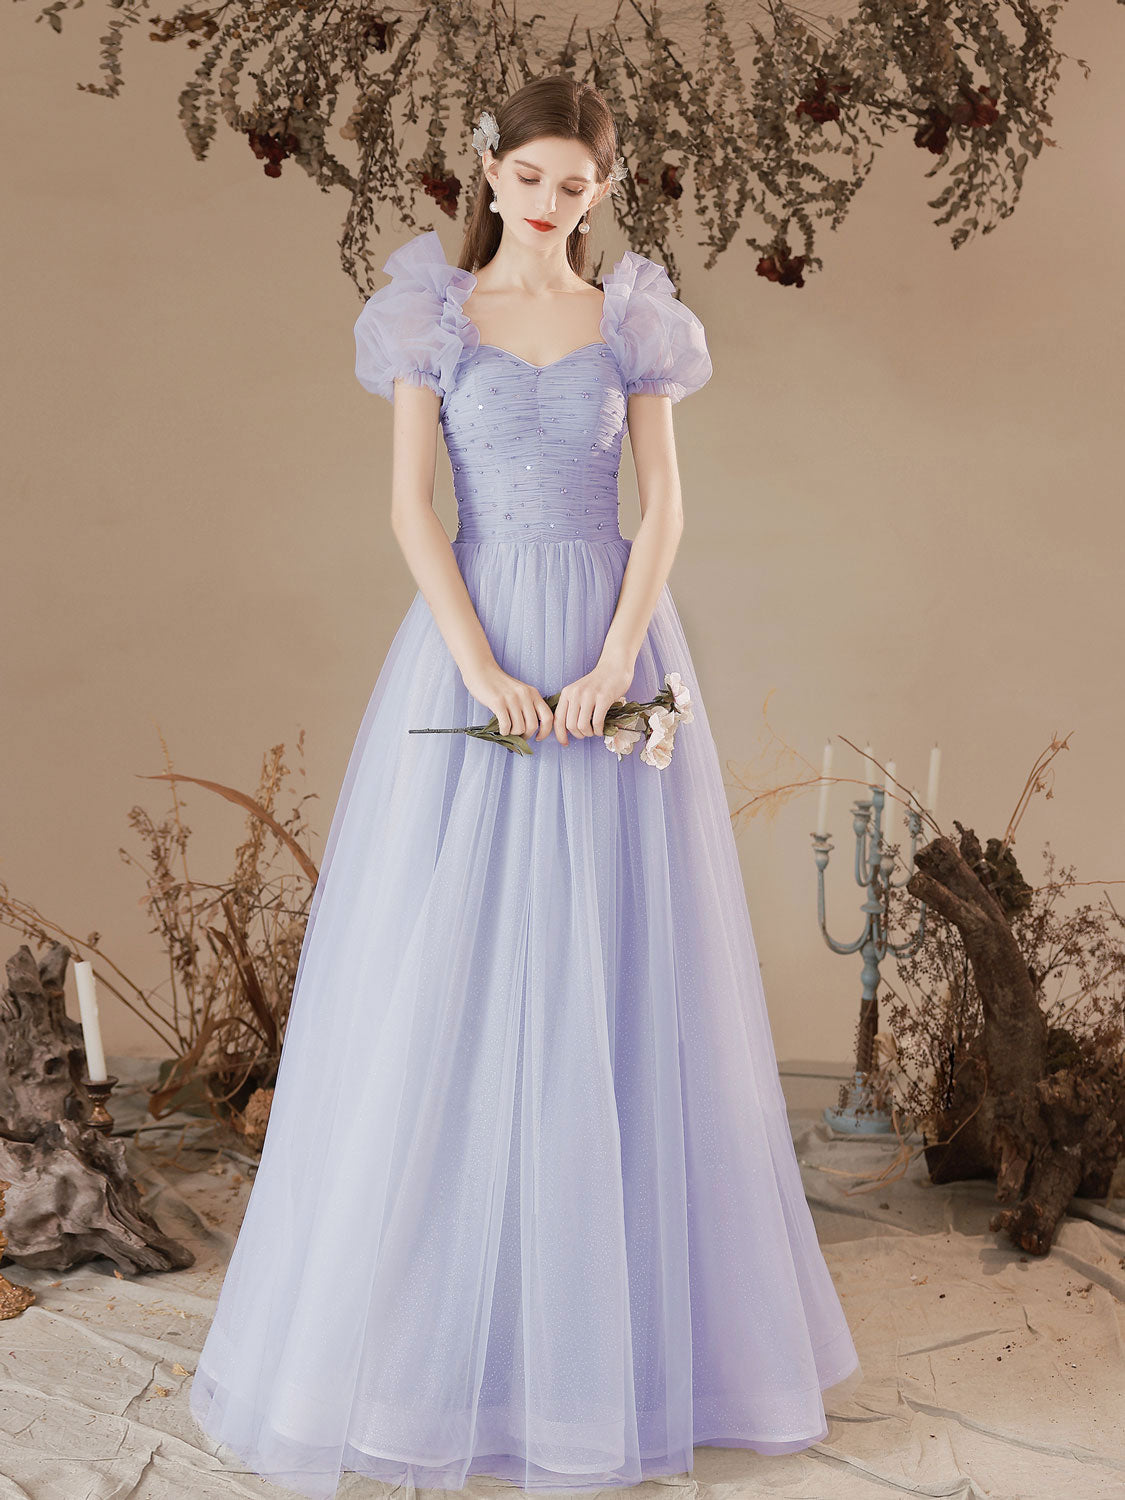 15 Fairy Tale Worthy Wedding Dresses for the Fashion-Loving Bride - Praise  Wedding